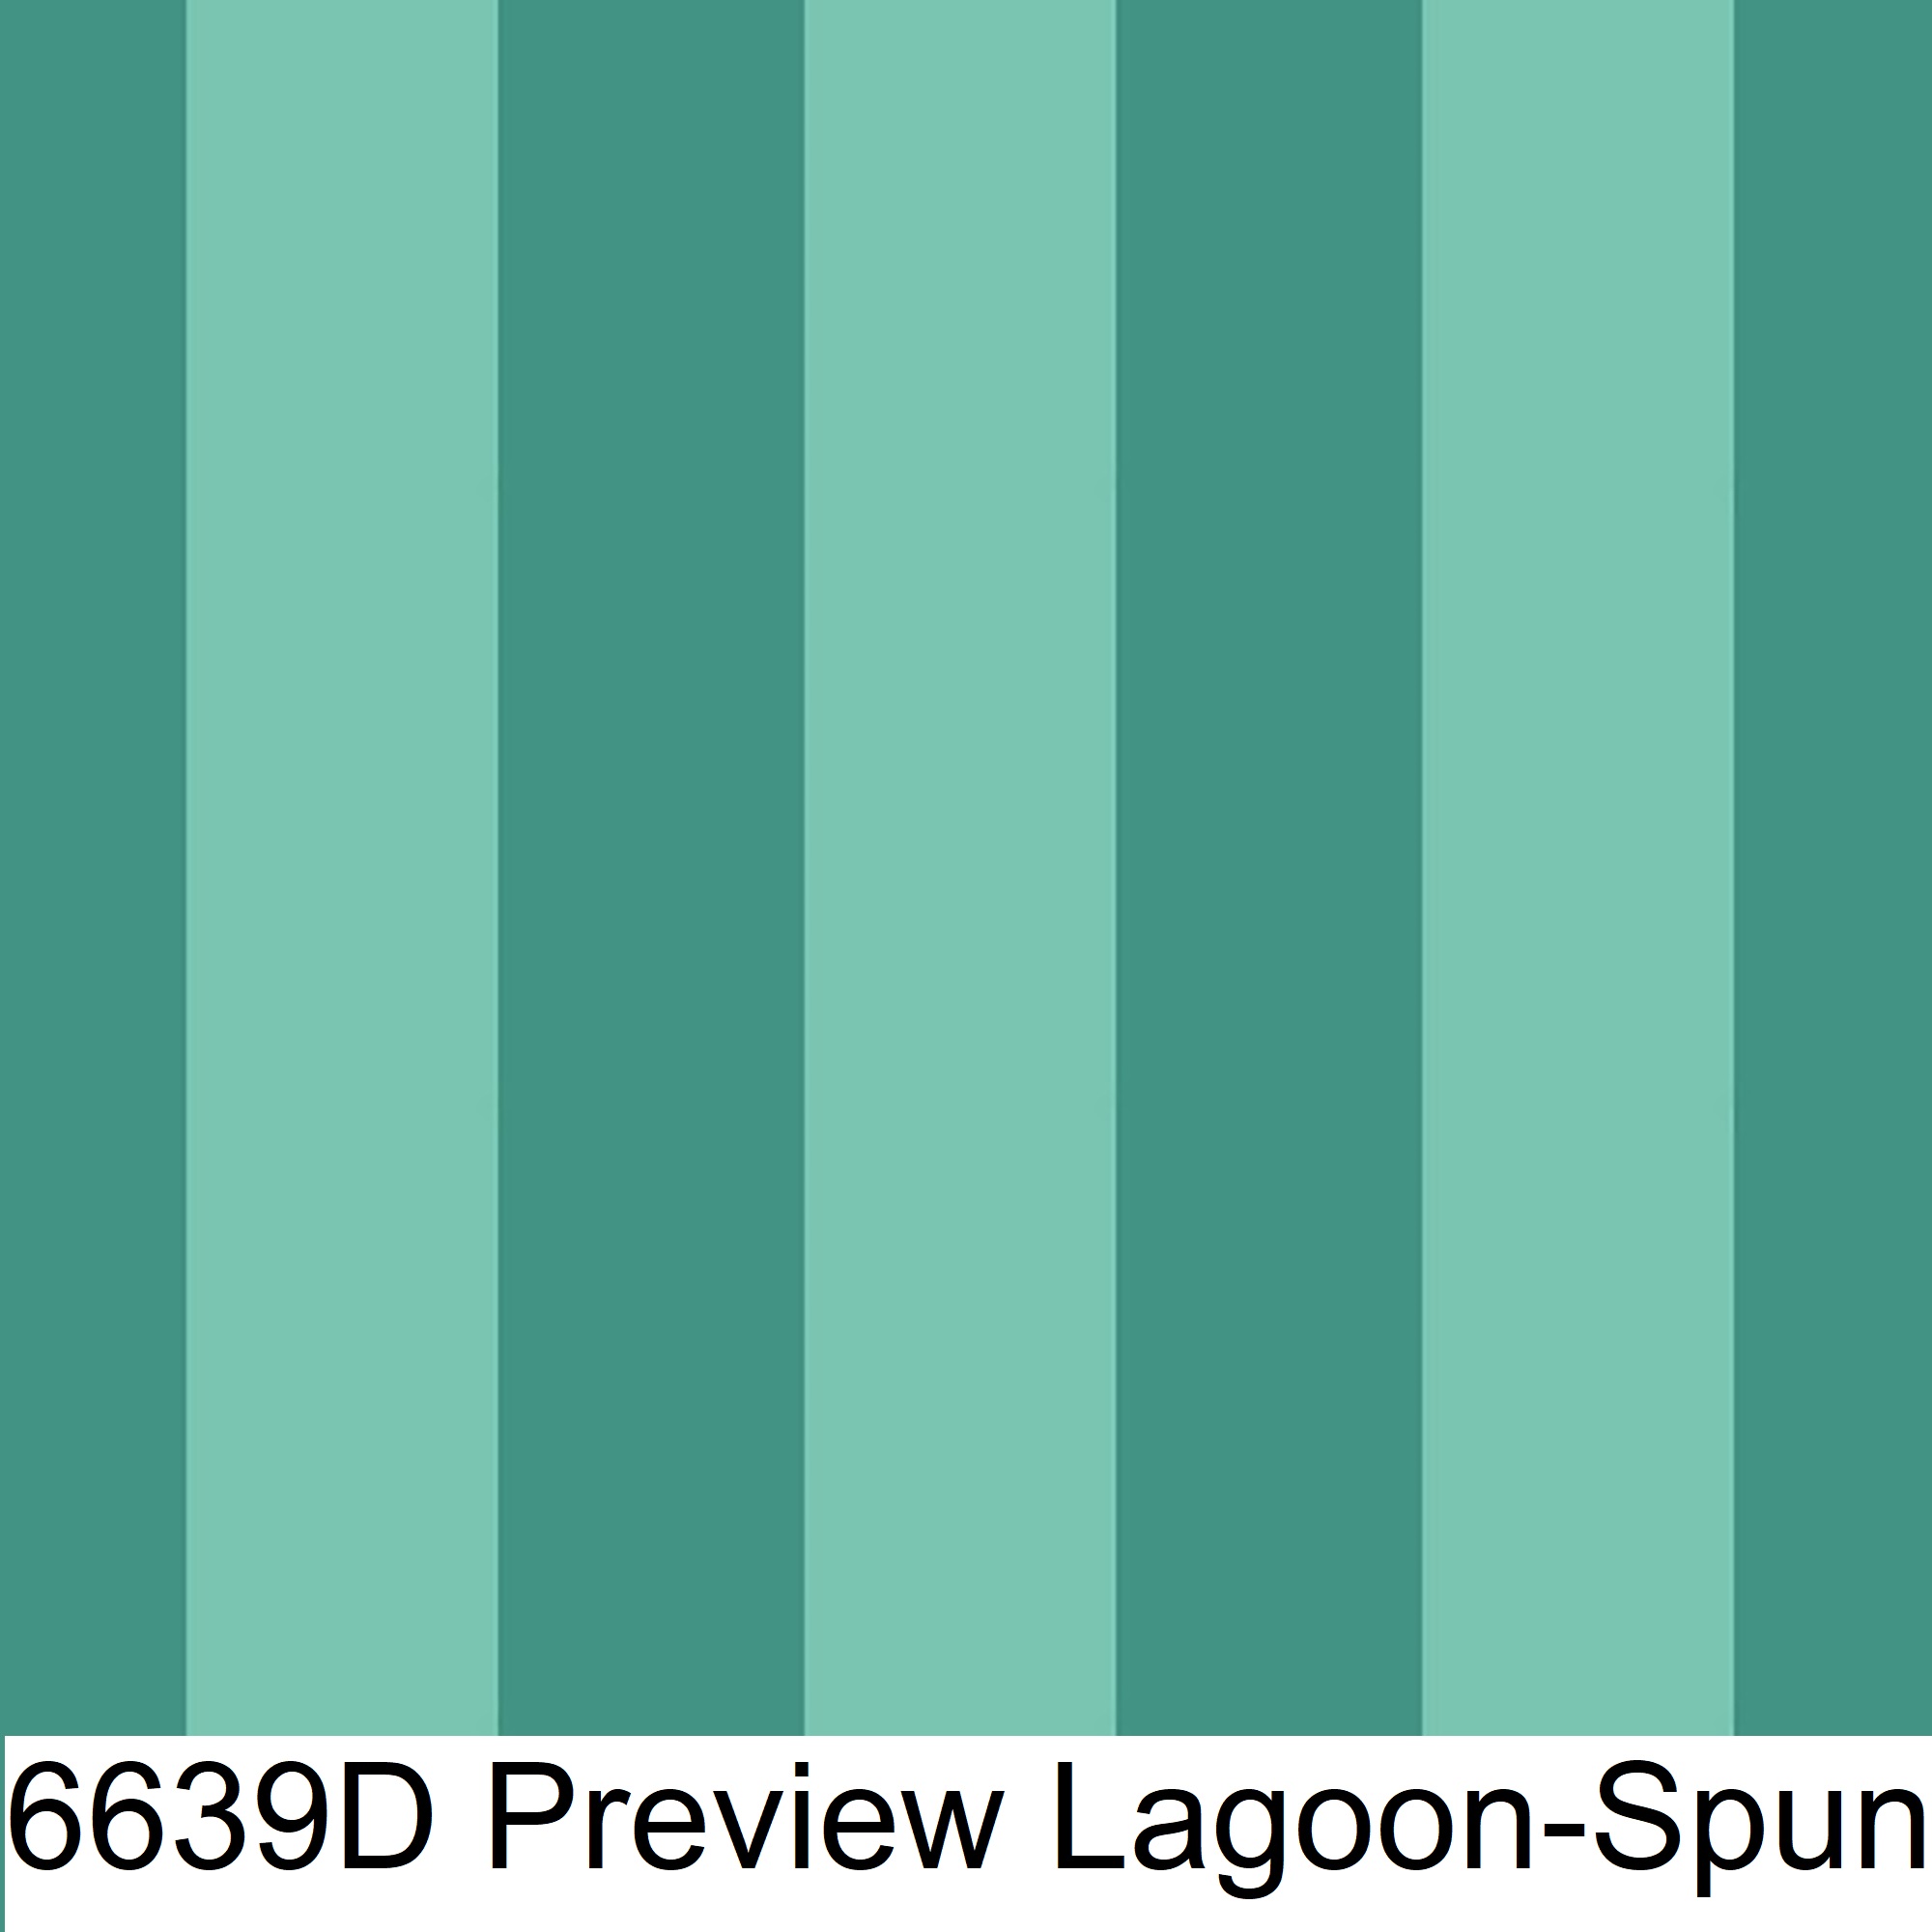 6639D Preview Lagoon-Spun